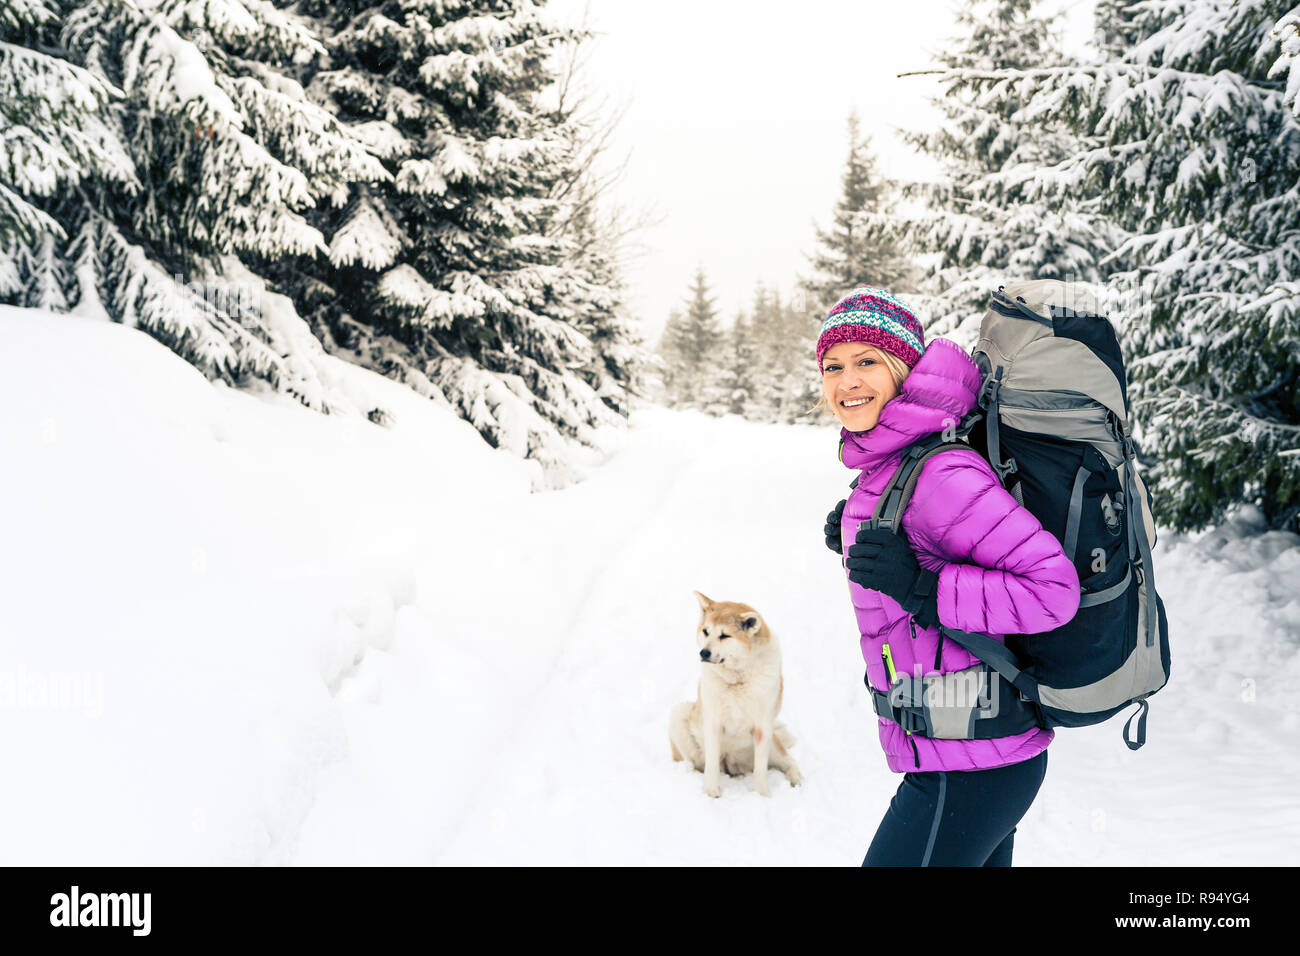 Happy girl Wandern in weiss Winter Wald mit Akita Hund. Erholung Fitness und gesunde Lebensweise draussen in der Natur. Inspirational Winterlandschaft. Stockfoto